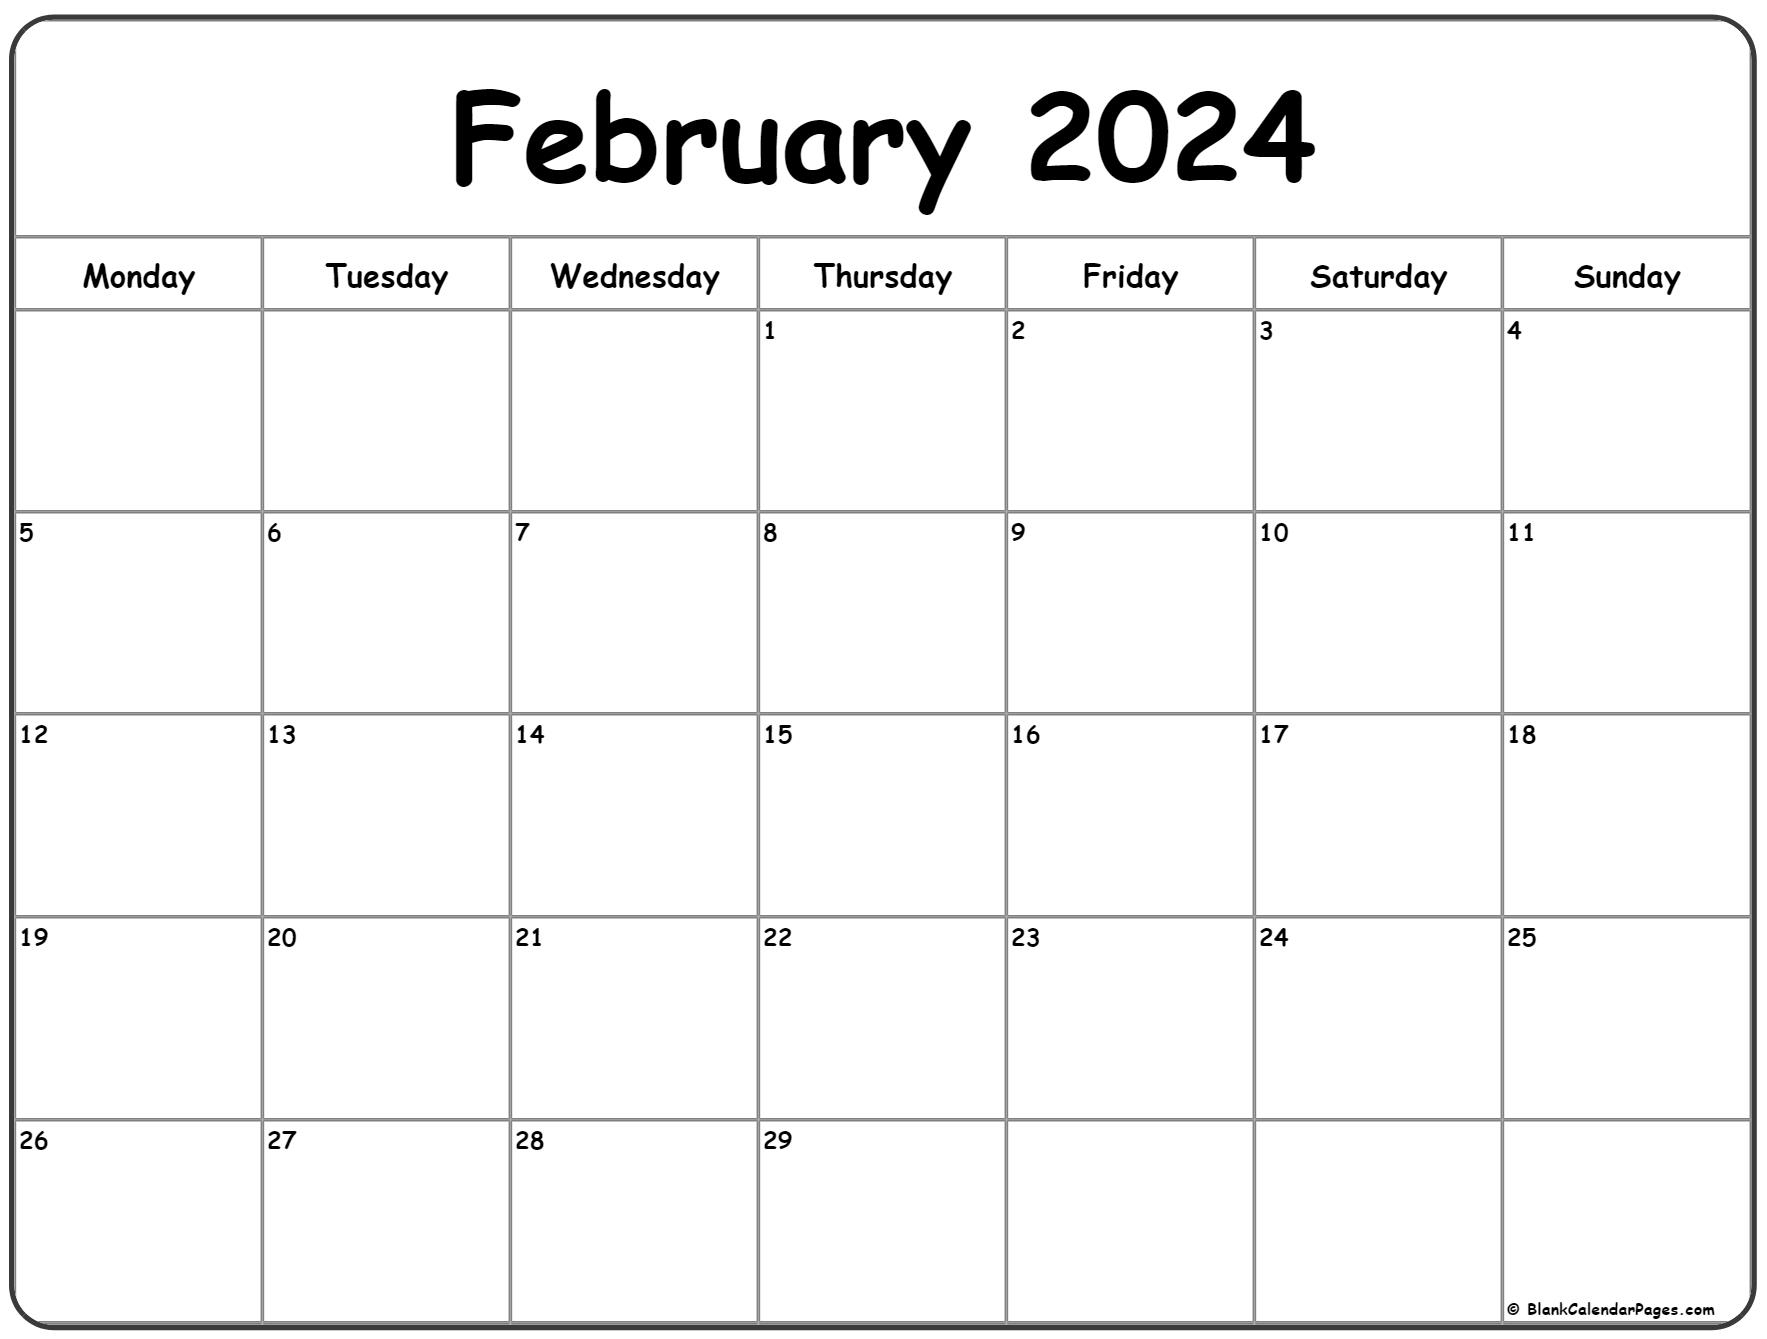 February 2024 Monday Calendar | Monday To Sunday for Calendar Printable 2024 February